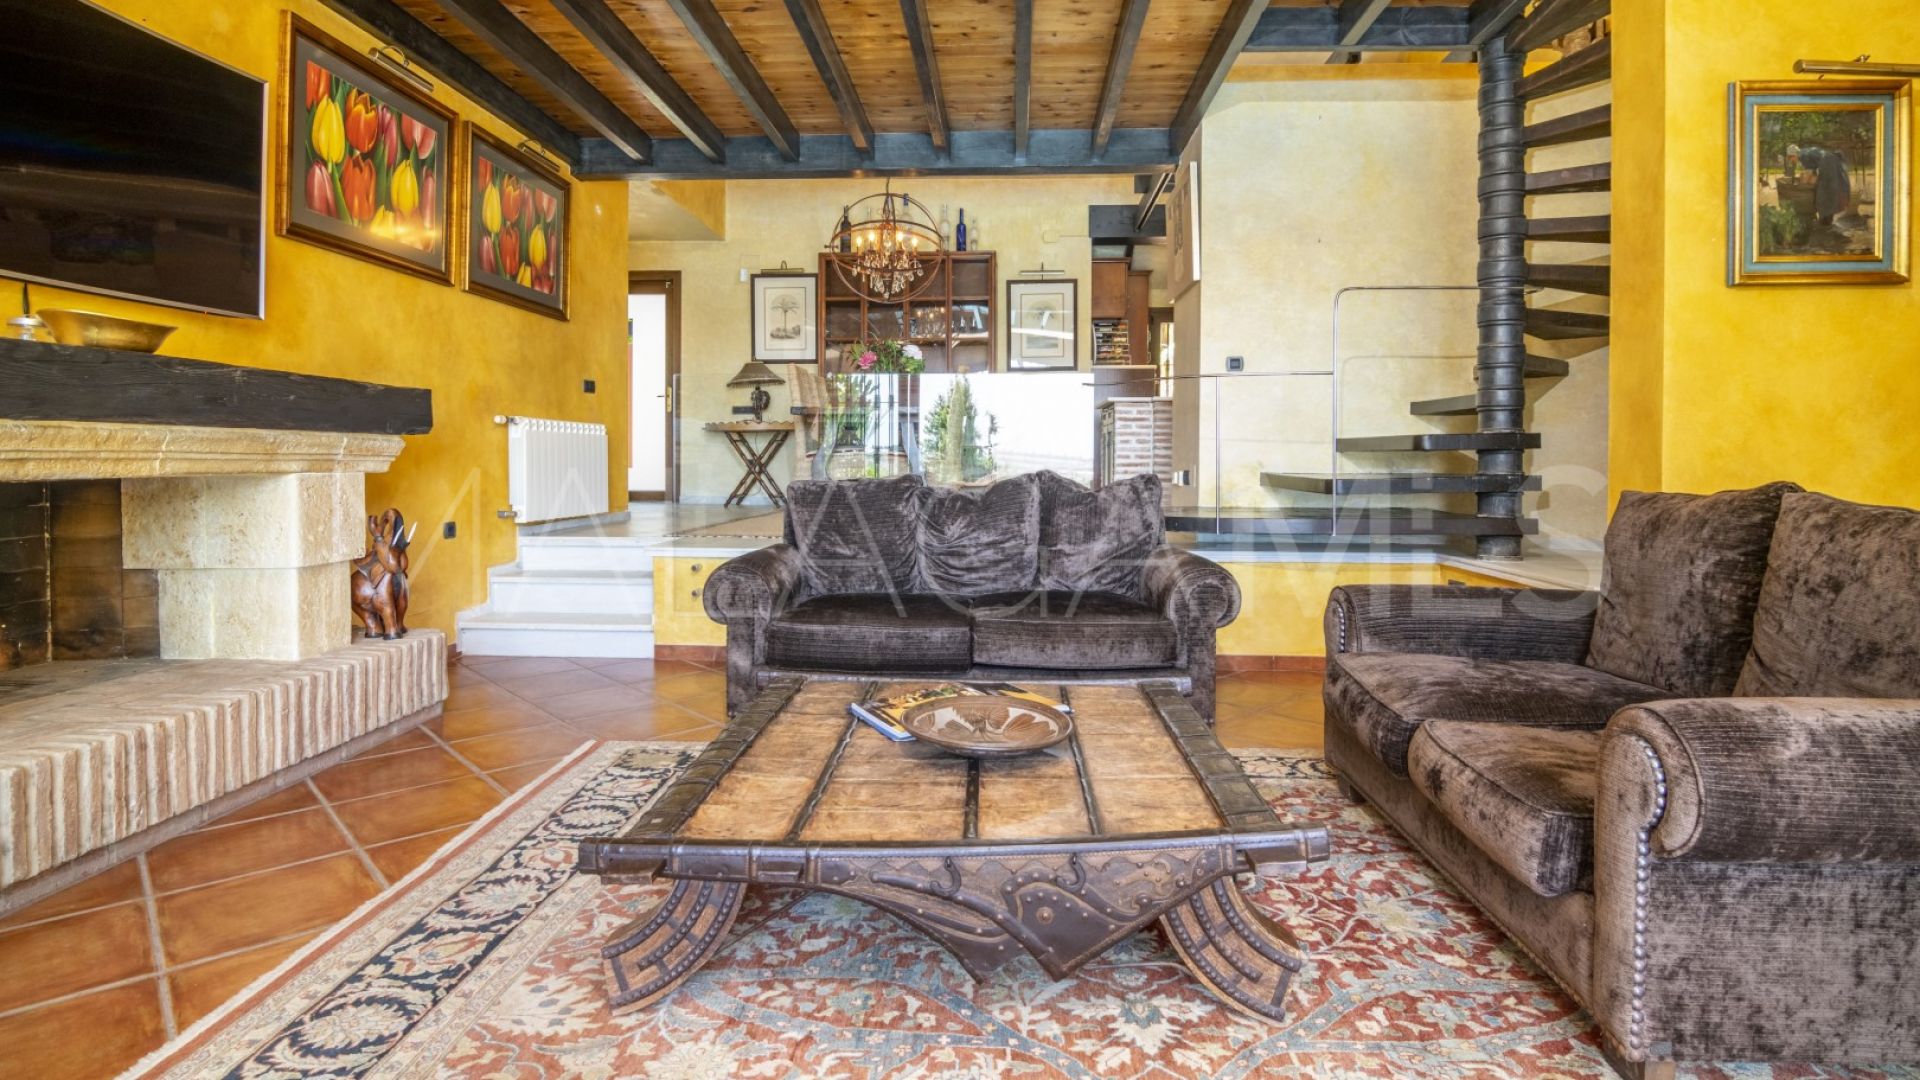 For sale villa with 3 bedrooms in Los Naranjos